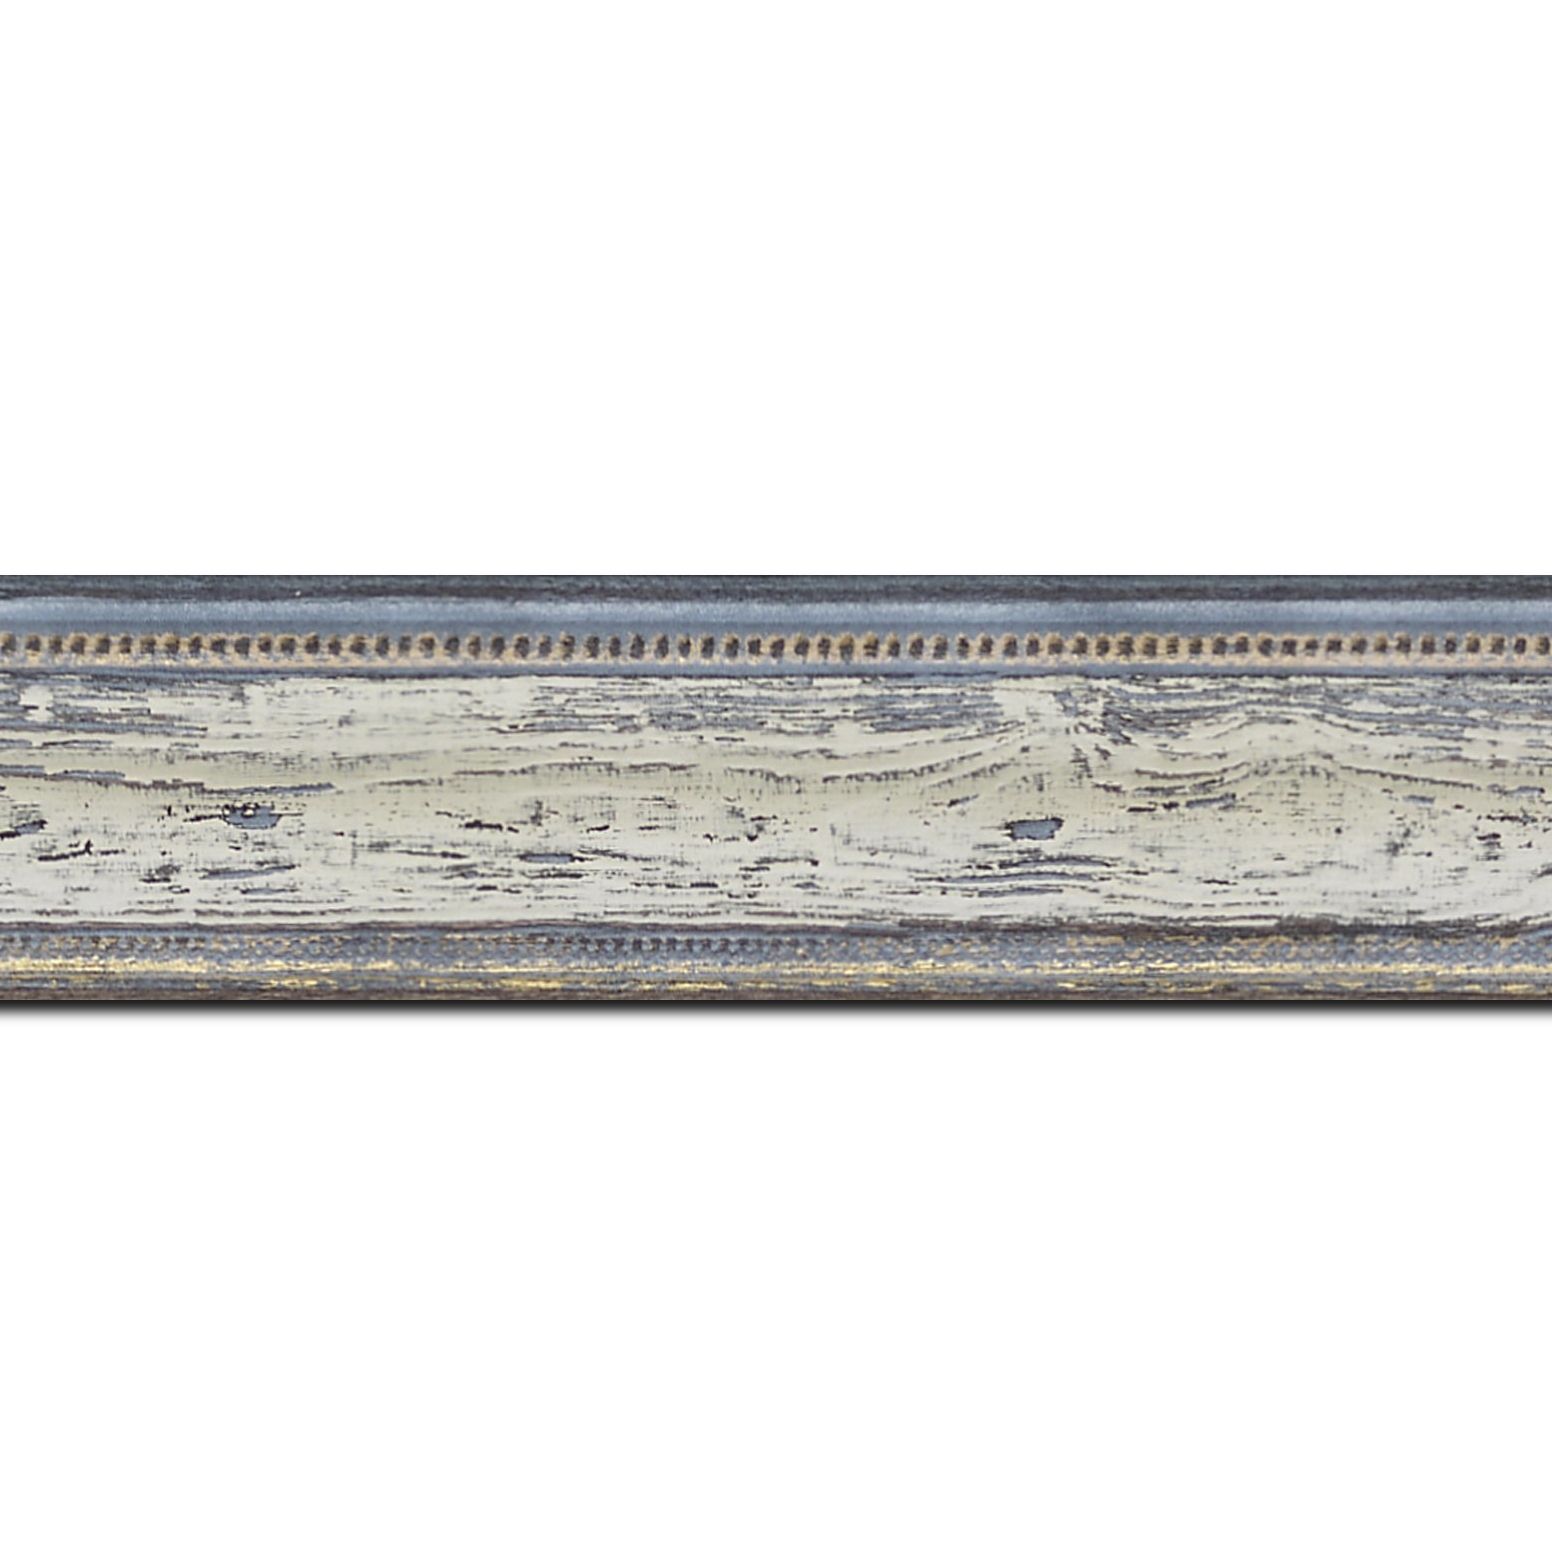 Baguette longueur 1.40m bois profil incurvé largeur 4.1cm couleur bleu blanchie aspect veiné liseret or